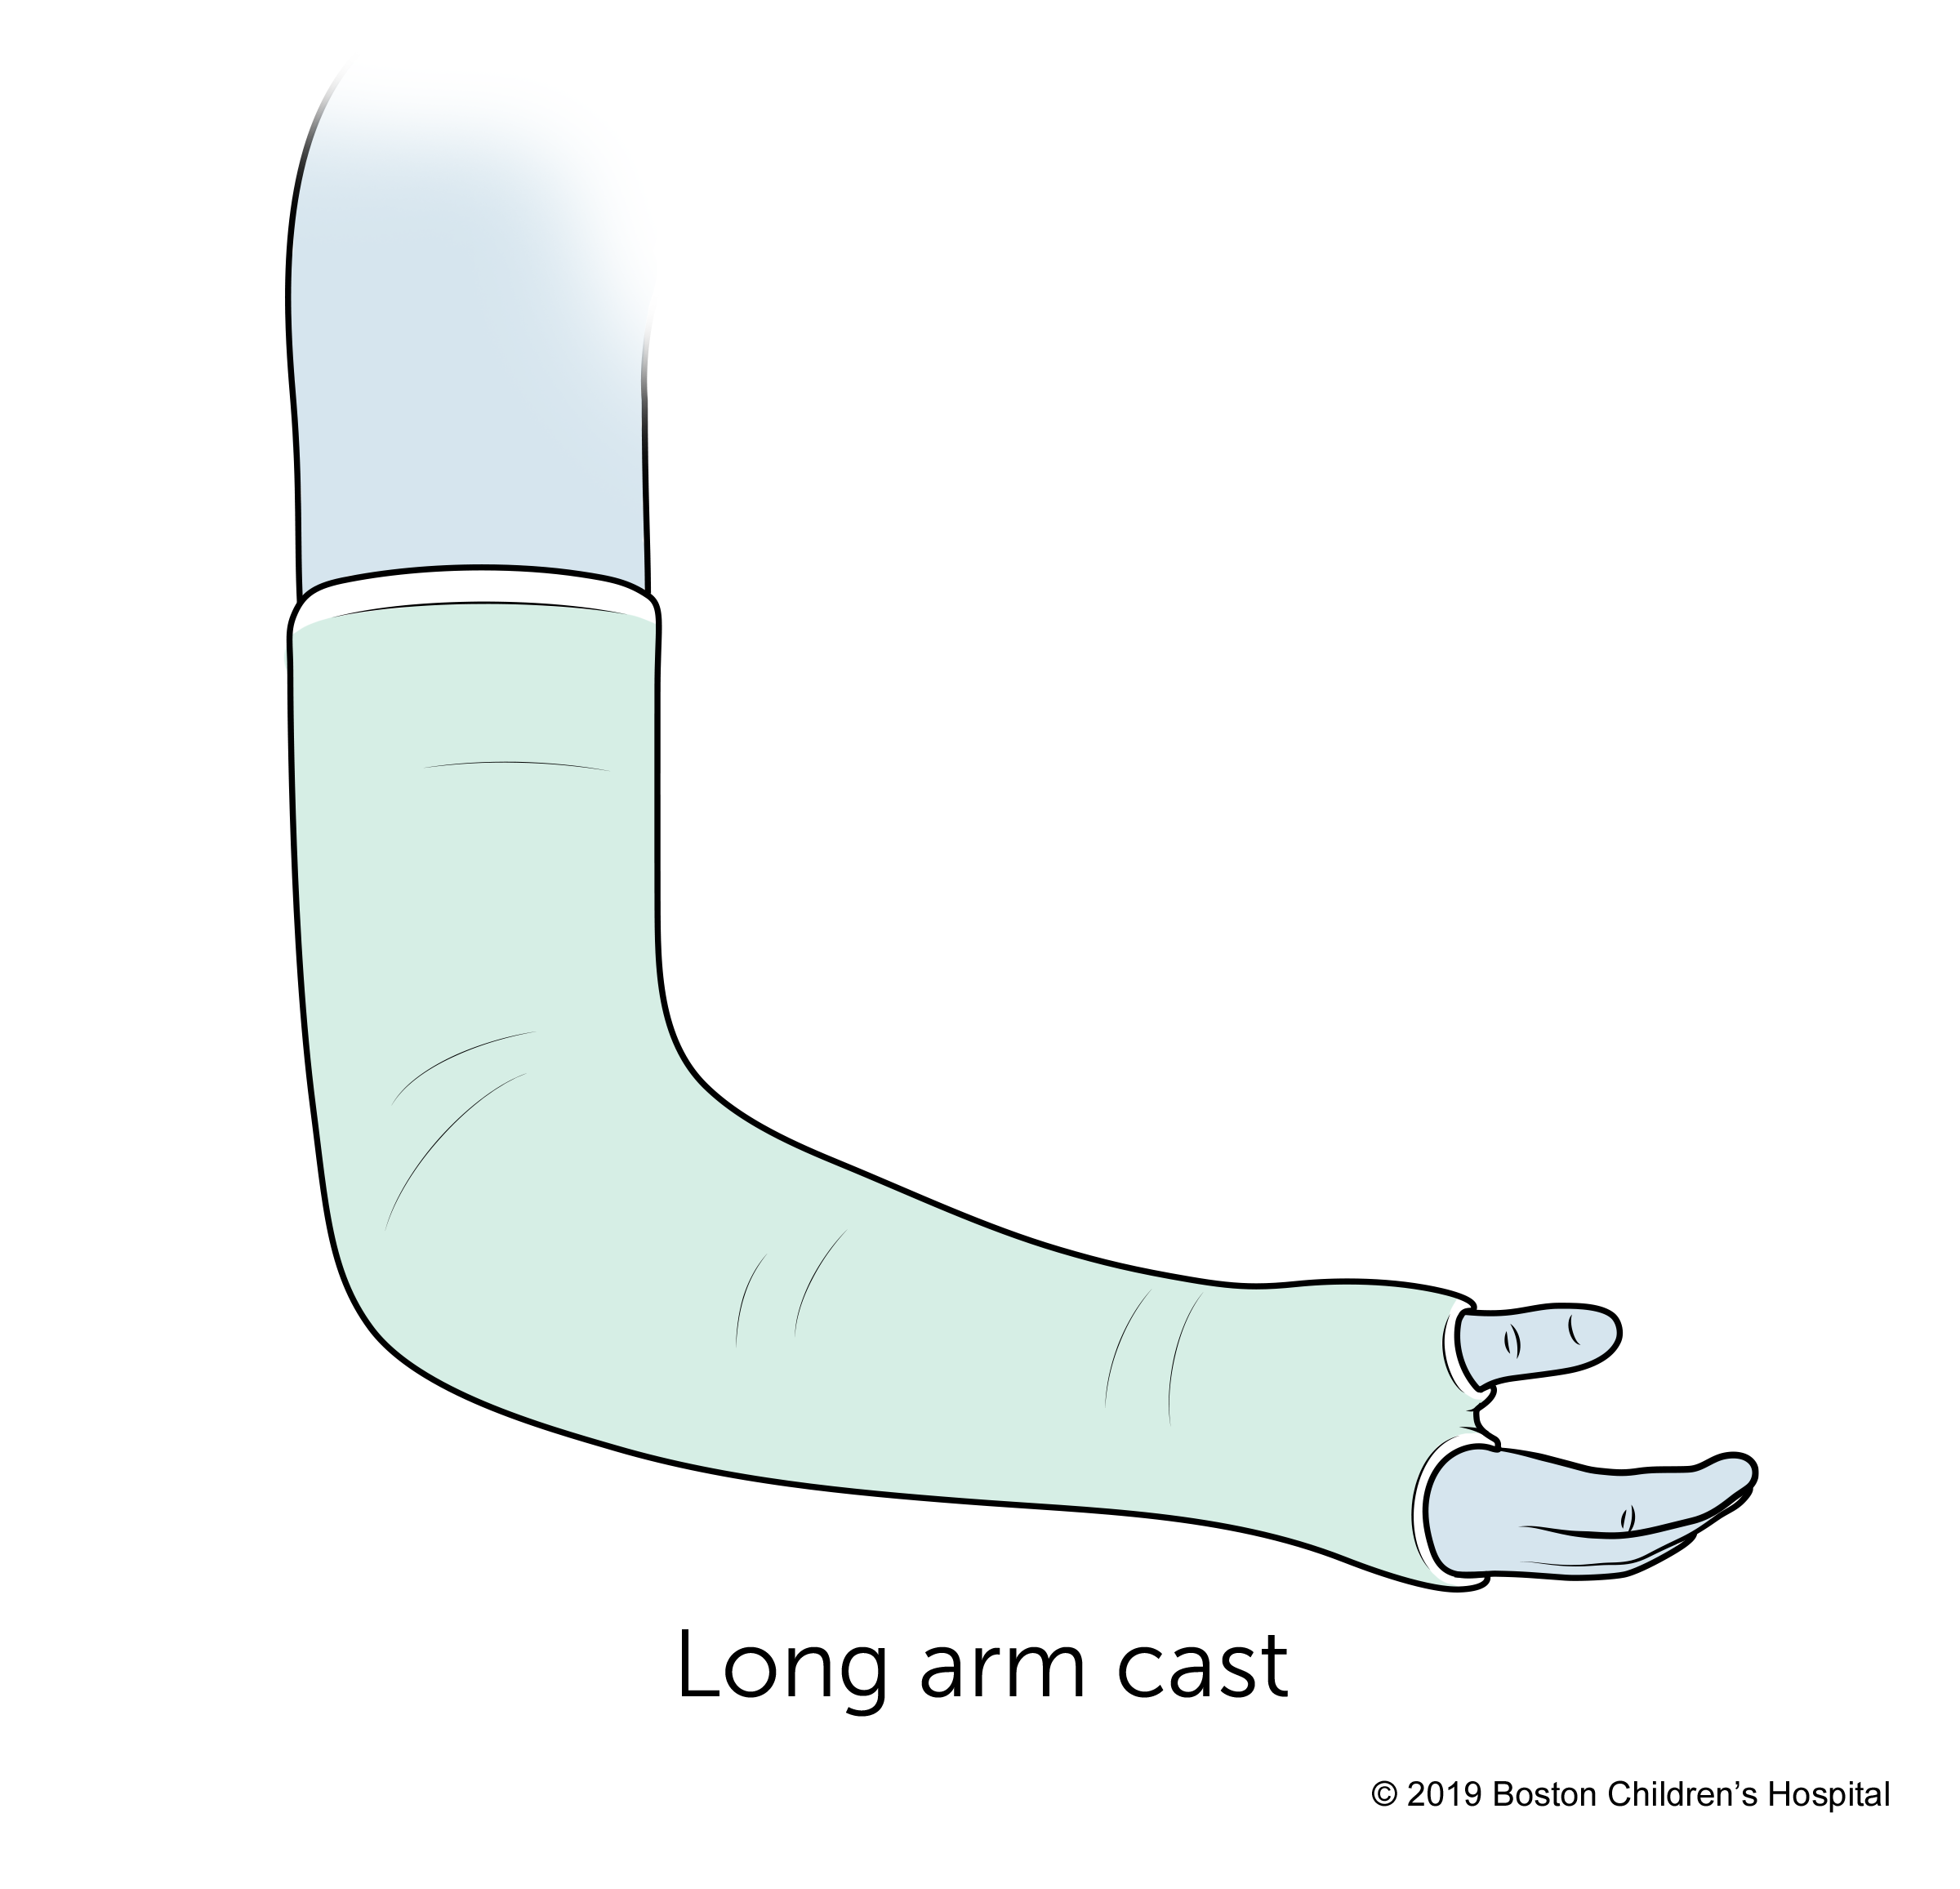 A long arm cast.